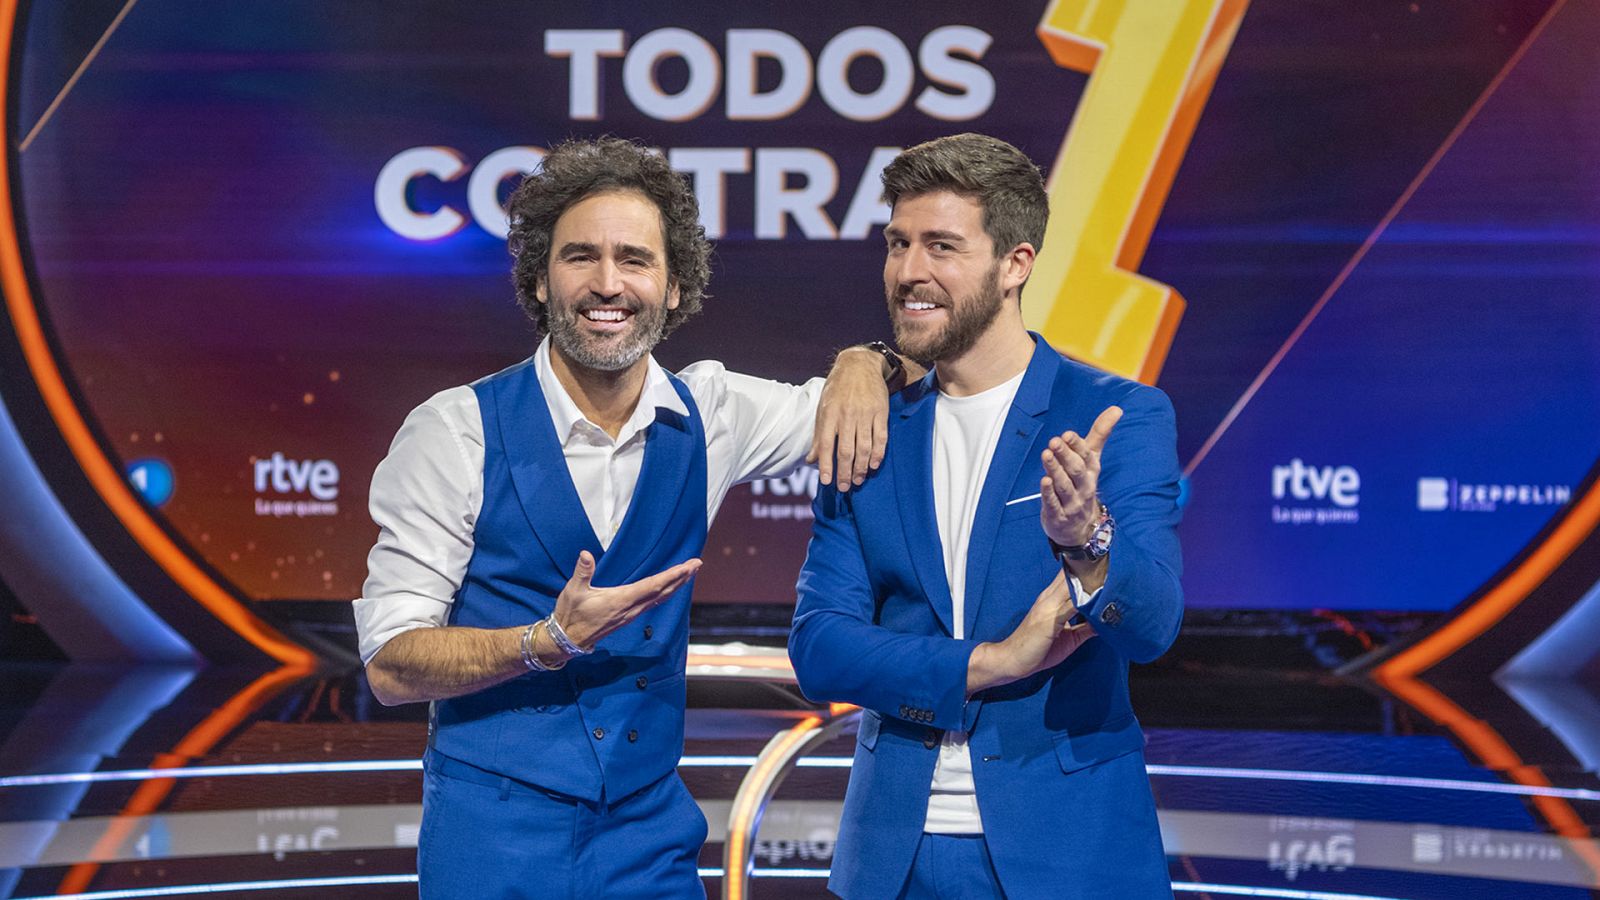 Raúl Gómez y Rodrigo Vázquez, presentadores del concurso 'Todos contra 1'